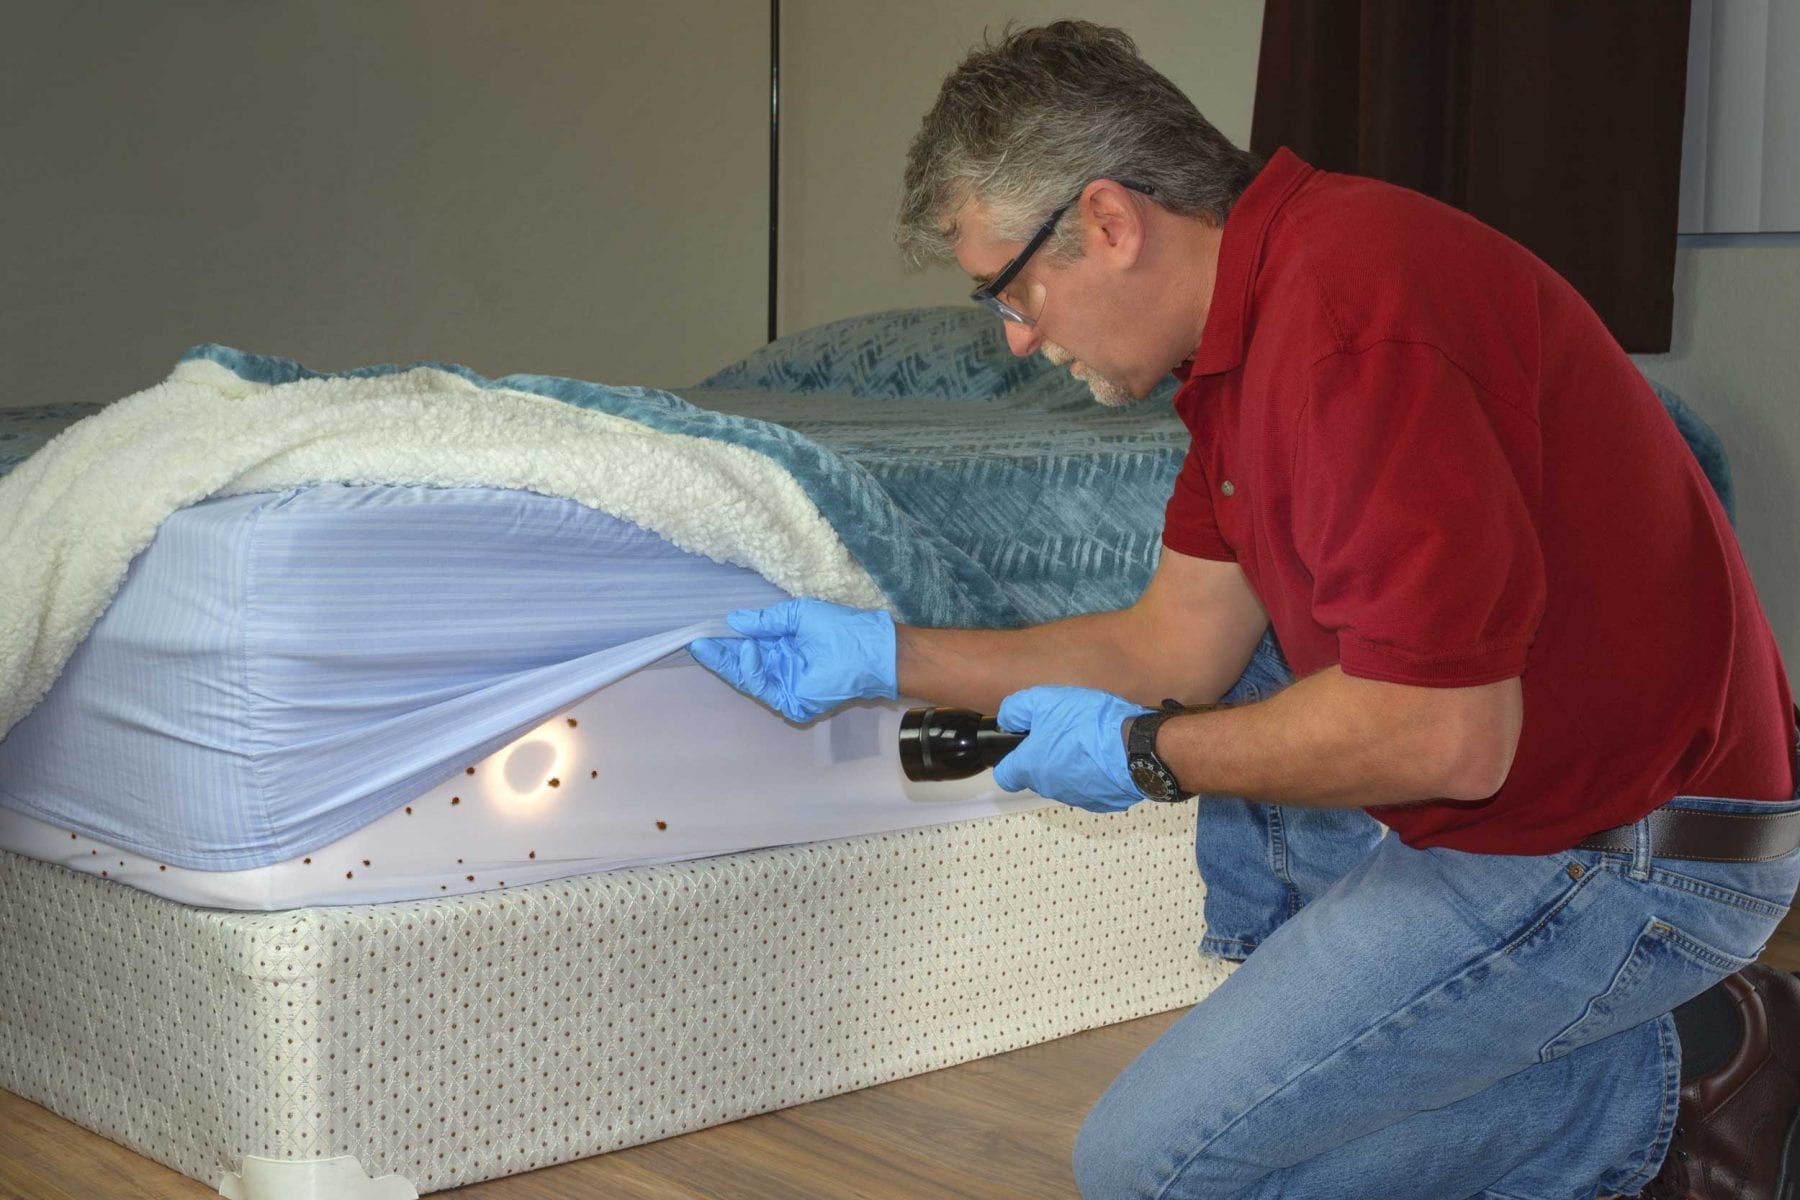 Bed bug infestation on mattress